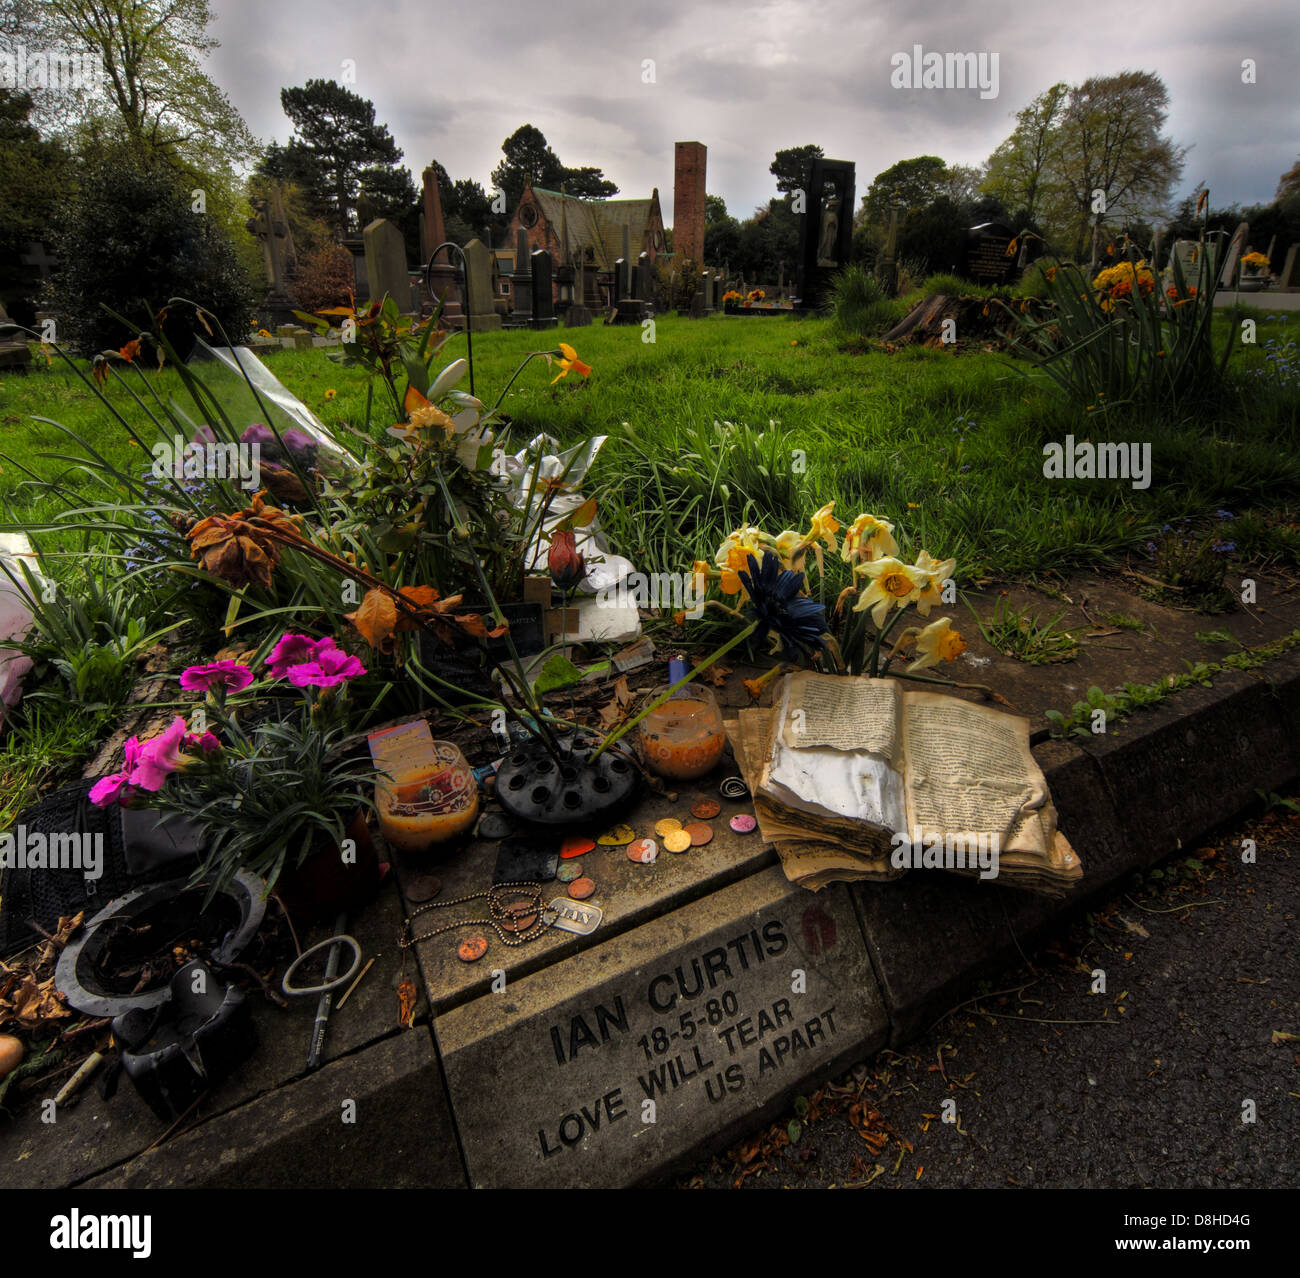 Der Grabstein in Macclesfield Friedhof von Ian Curtis, Sänger der Rockband Manchester Joy Division starb 18.05.80 - Inschrift Stockfoto